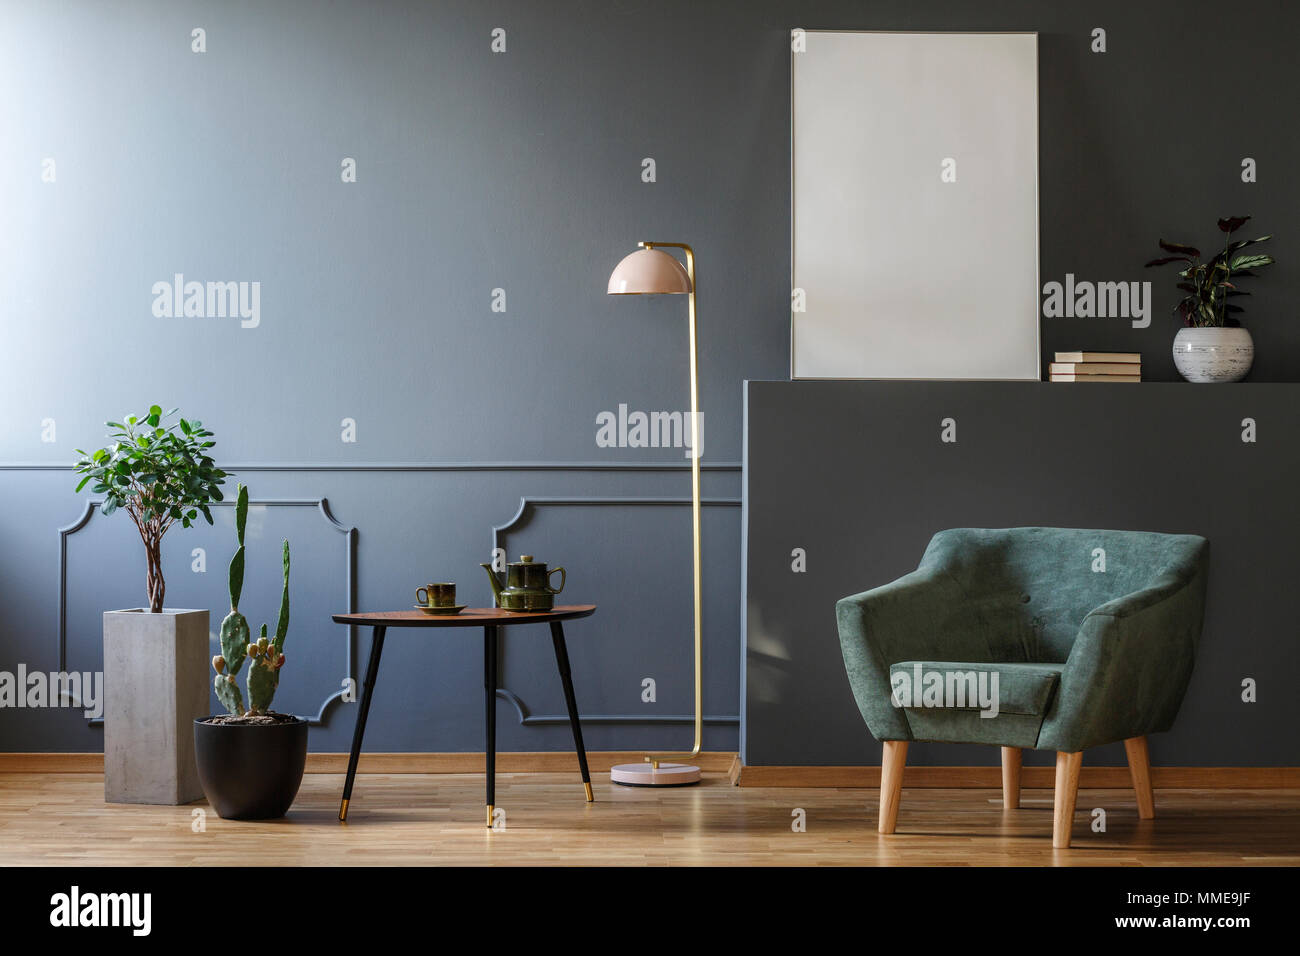 Le tableau entre les plantes et la lampe en gris vacances intérieur avec un fauteuil vert et immersive Banque D'Images